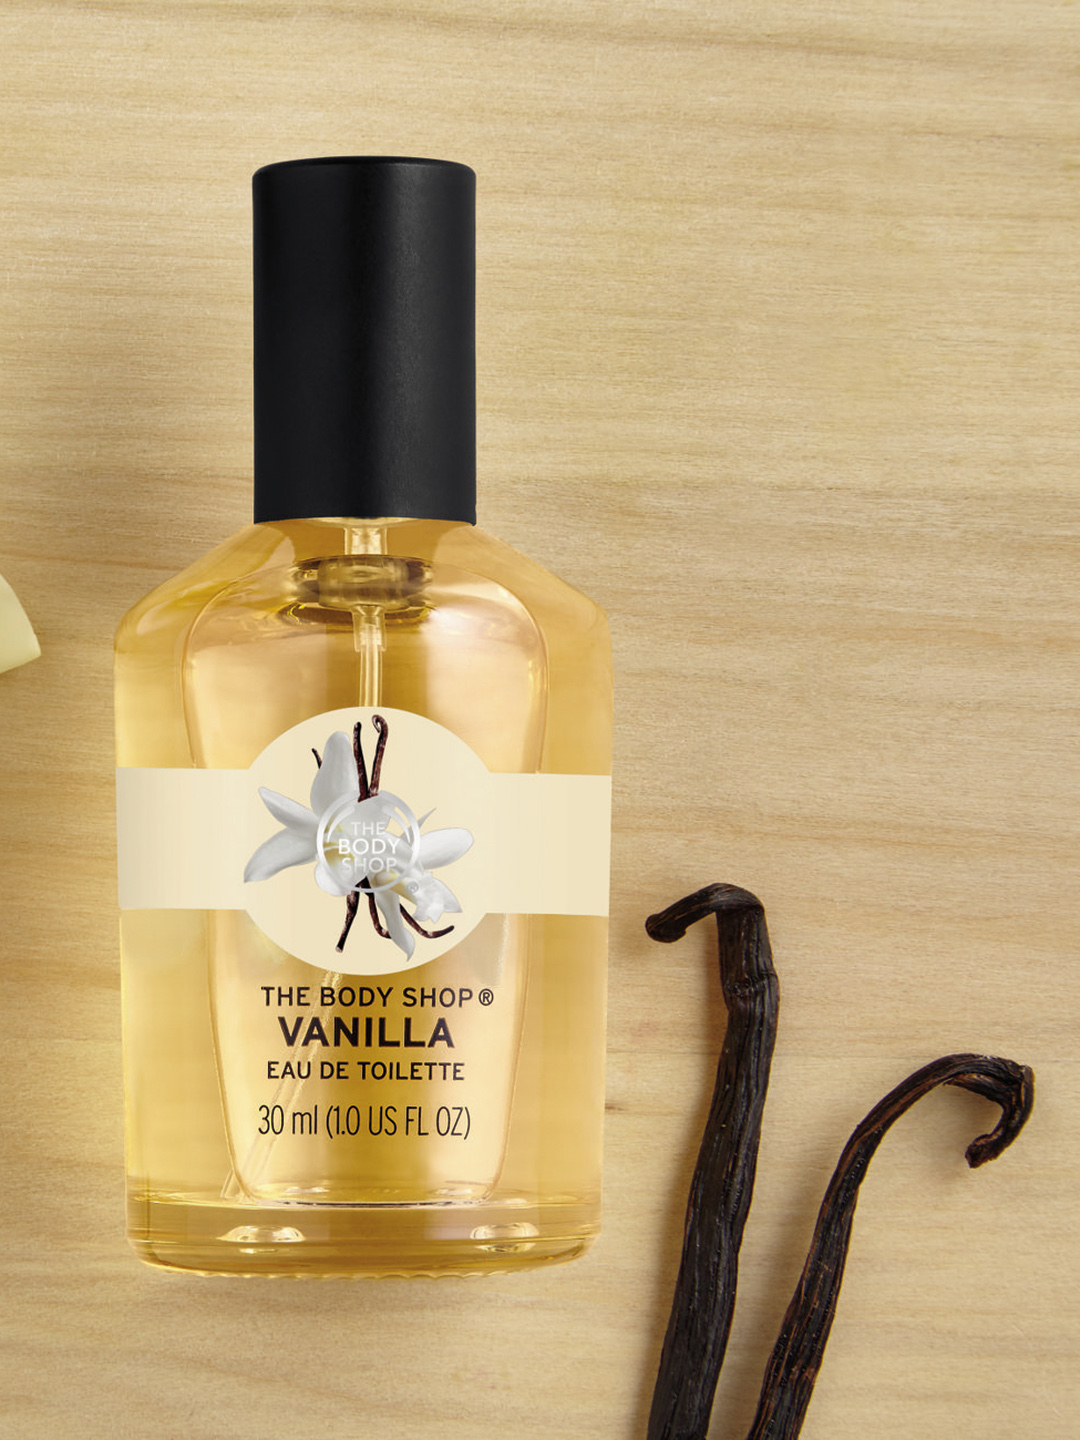 The Body Shop Vanilla Eau de Toilette 30 ml Price in India